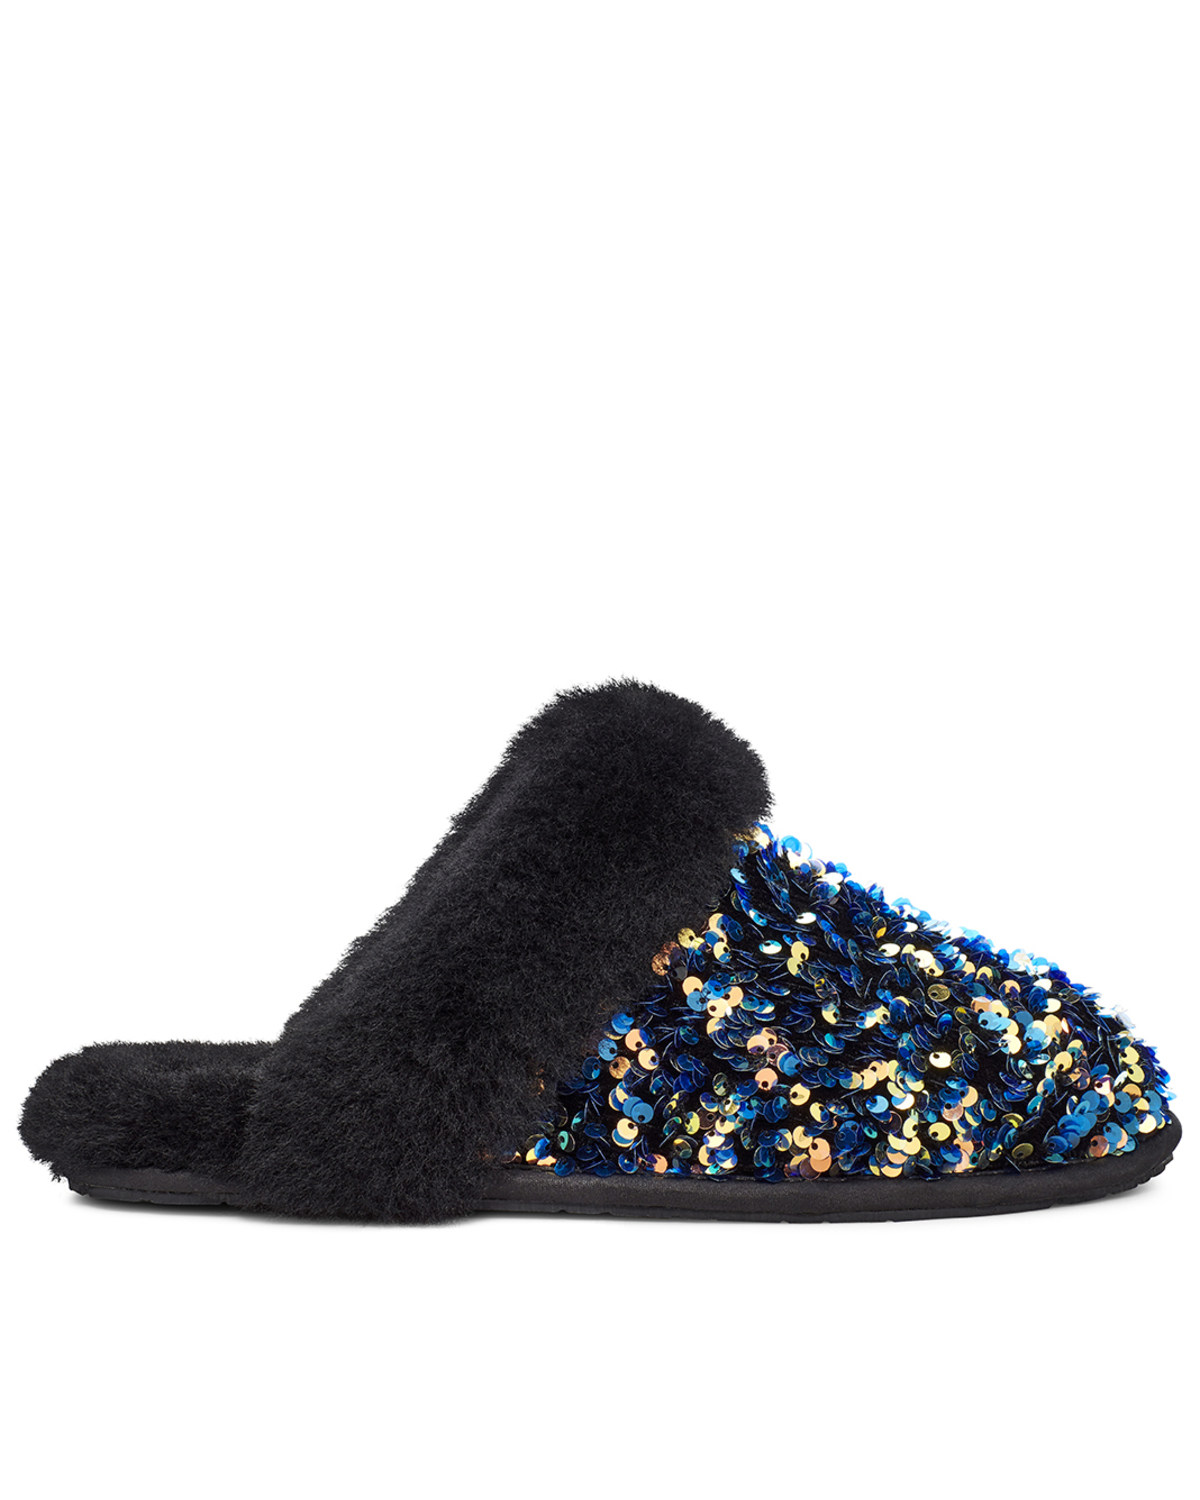 ugg slippers black glitter